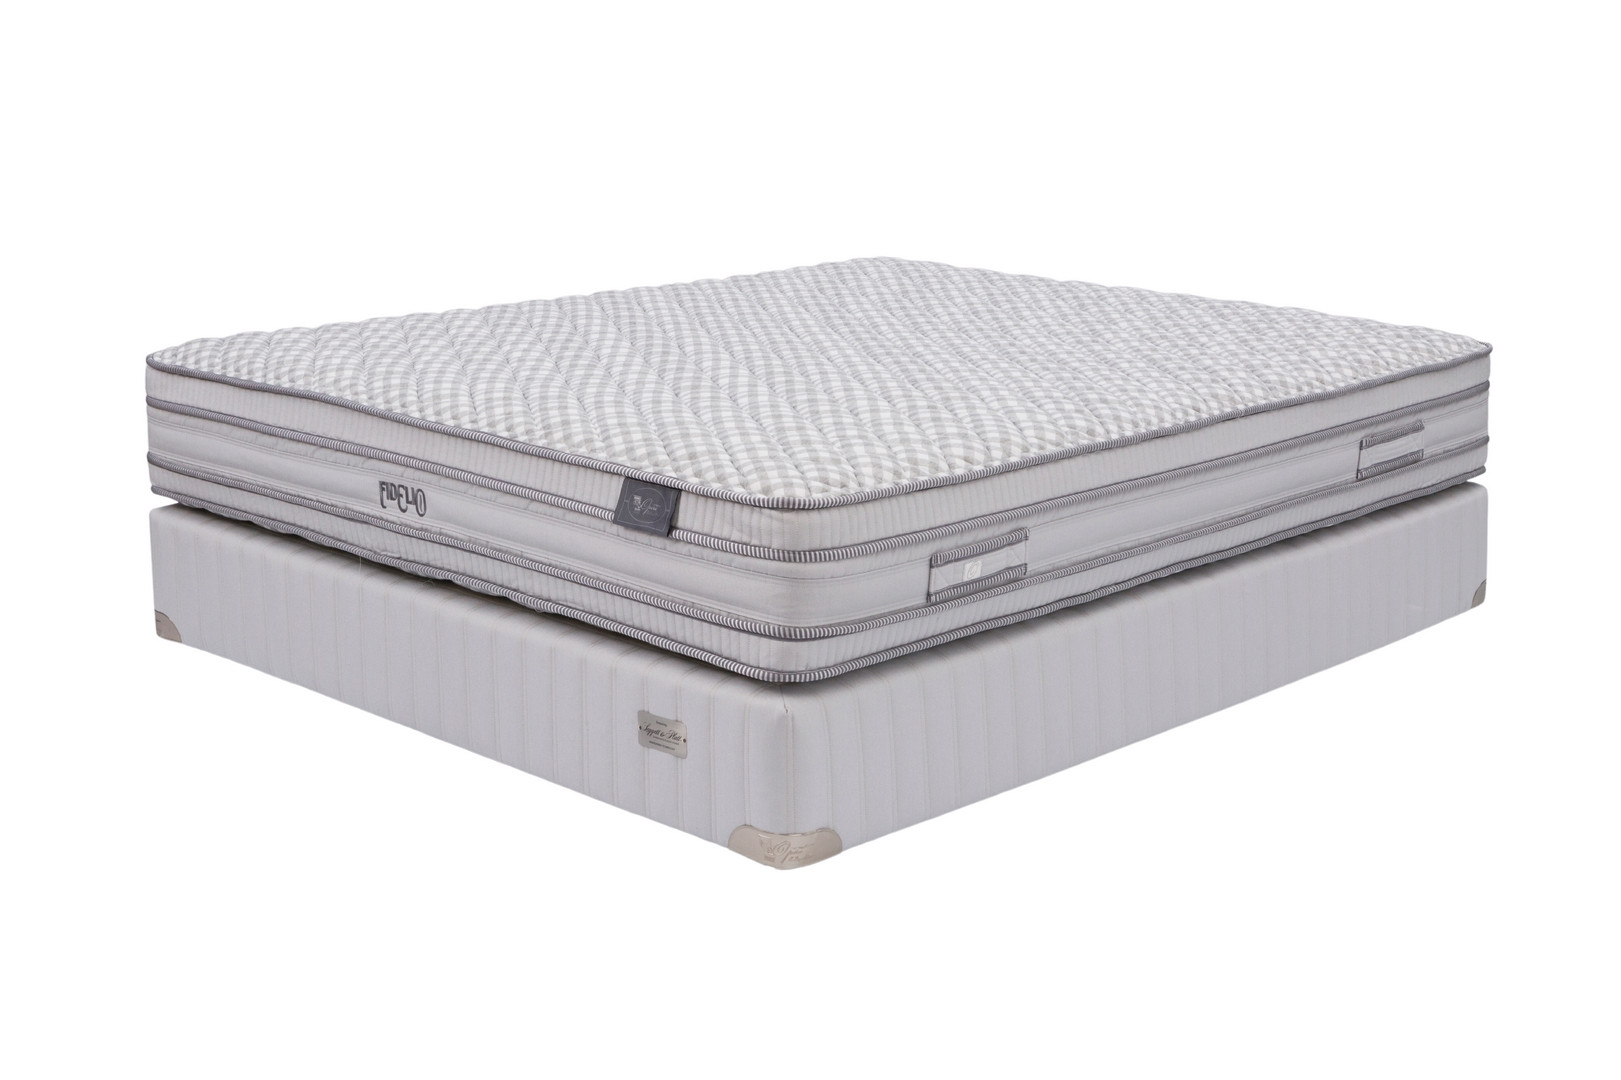 Opera orthopedic mattress Fidelio 190x190 medium, 26.25cm